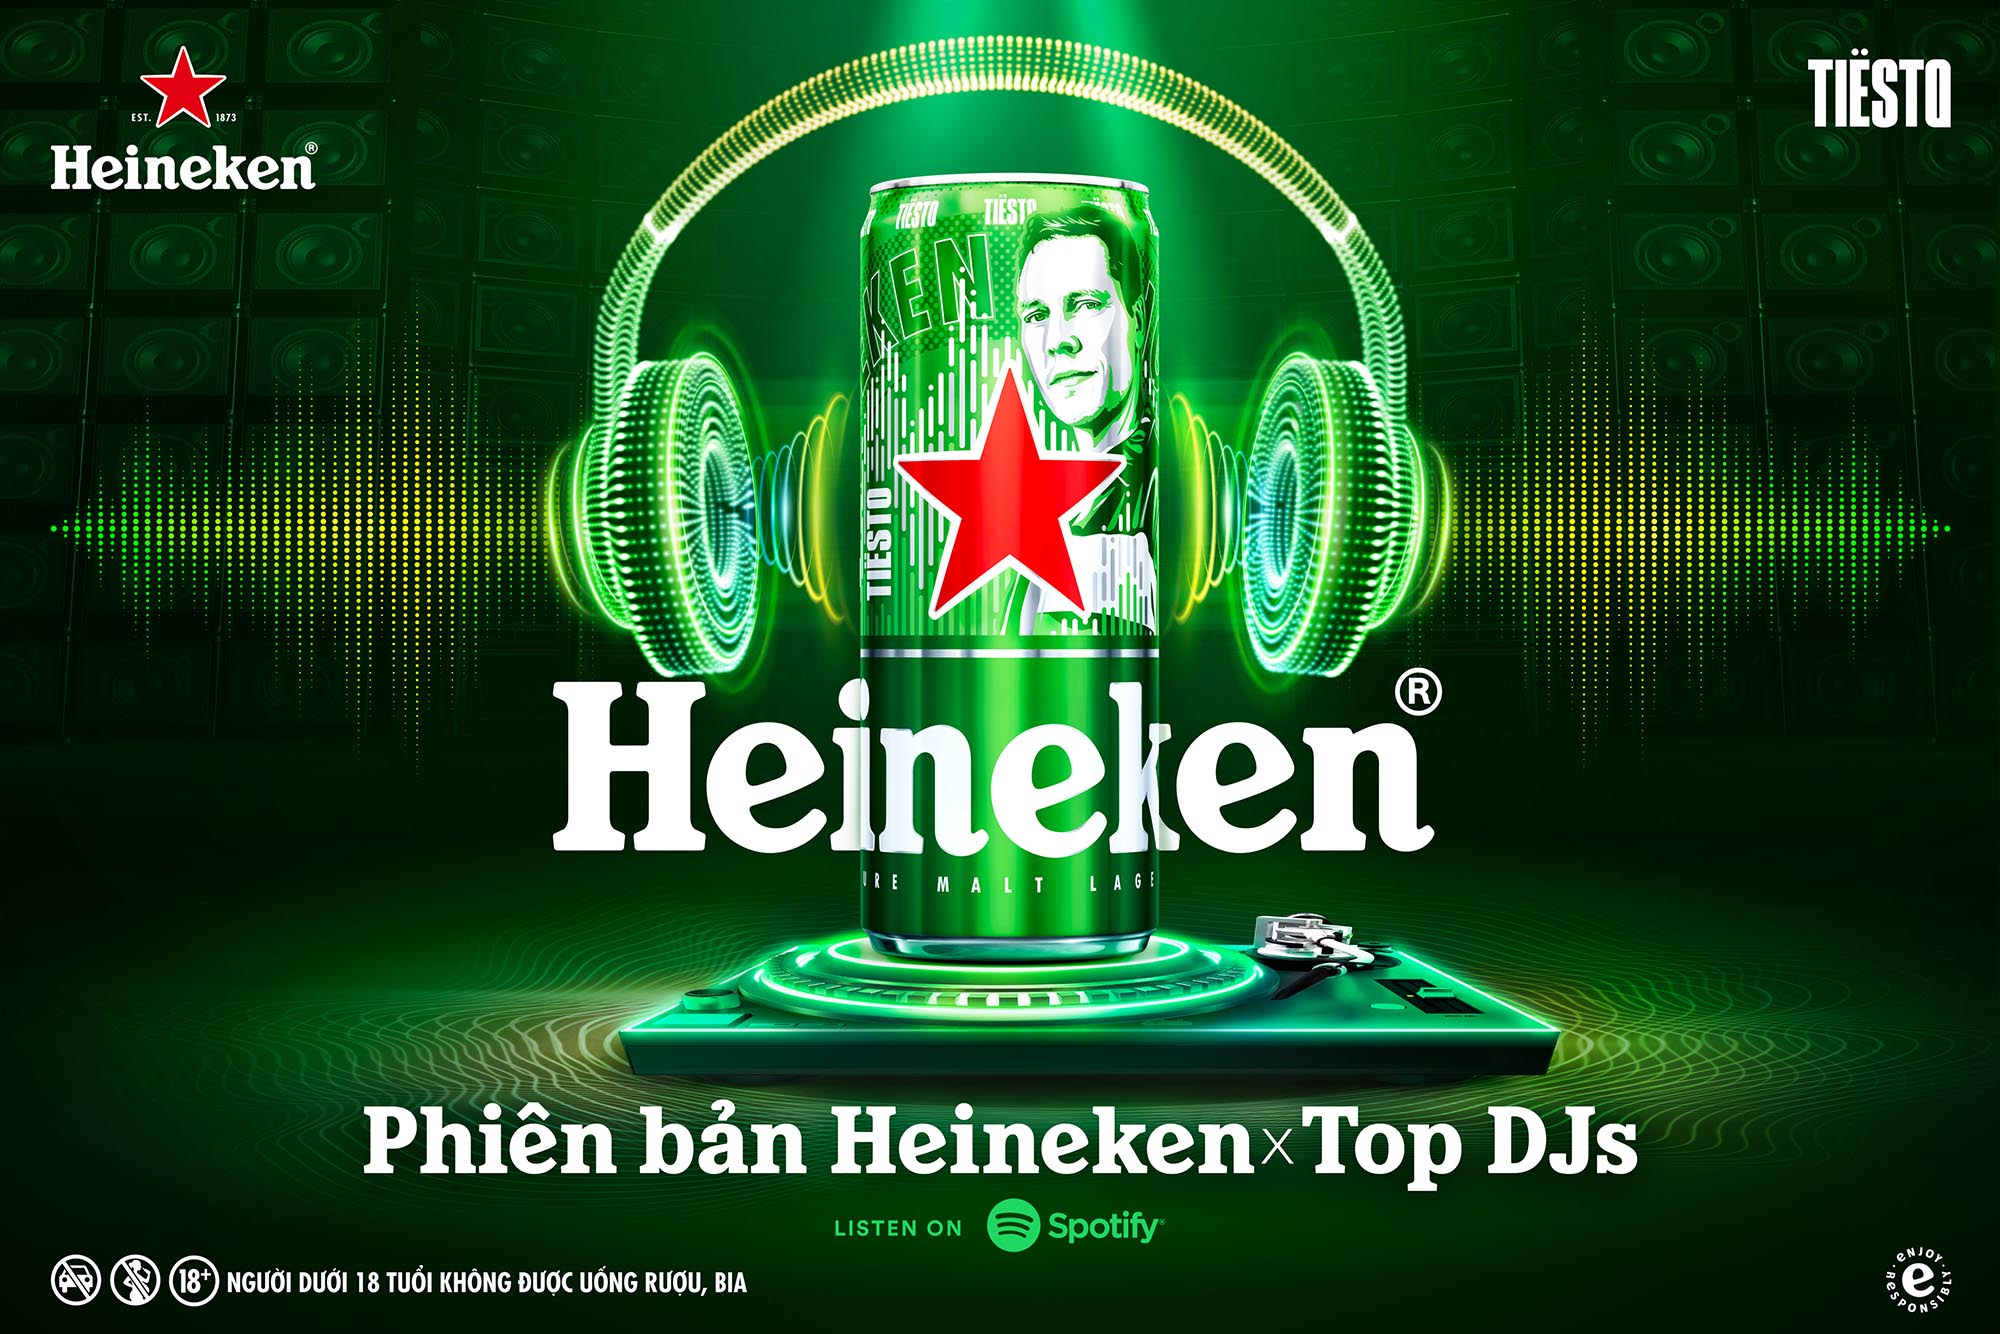 Phiên bản lon cao Heineken® x Top DJs mang đến trải nghiệm âm nhạc điện tử độc đáo cho người tiêu dùng Việt Nam